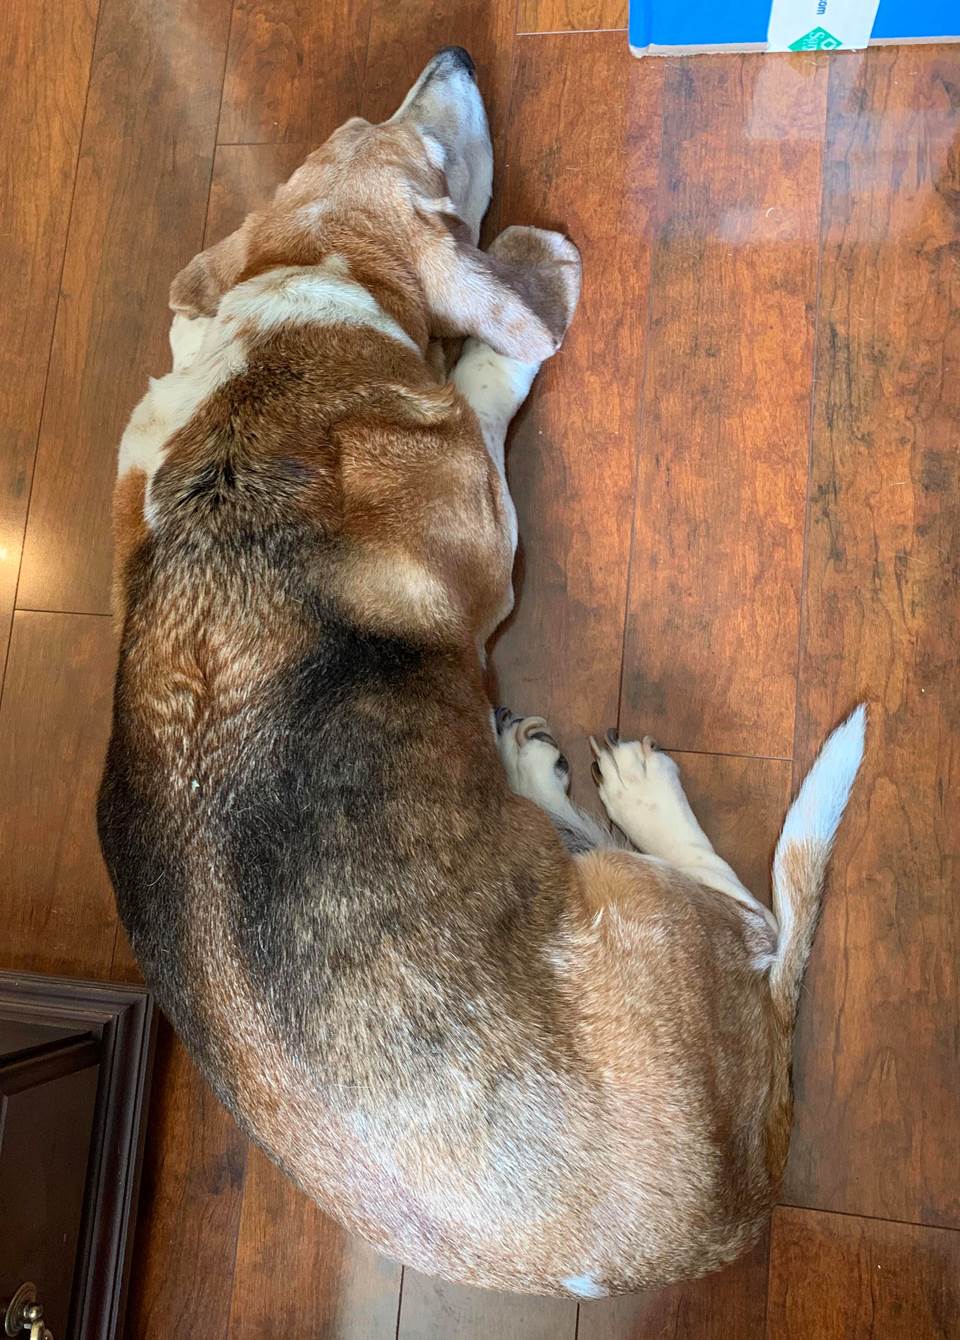 Harley, communication specialist Sarah Richardson's basset hound, is always near her feet.